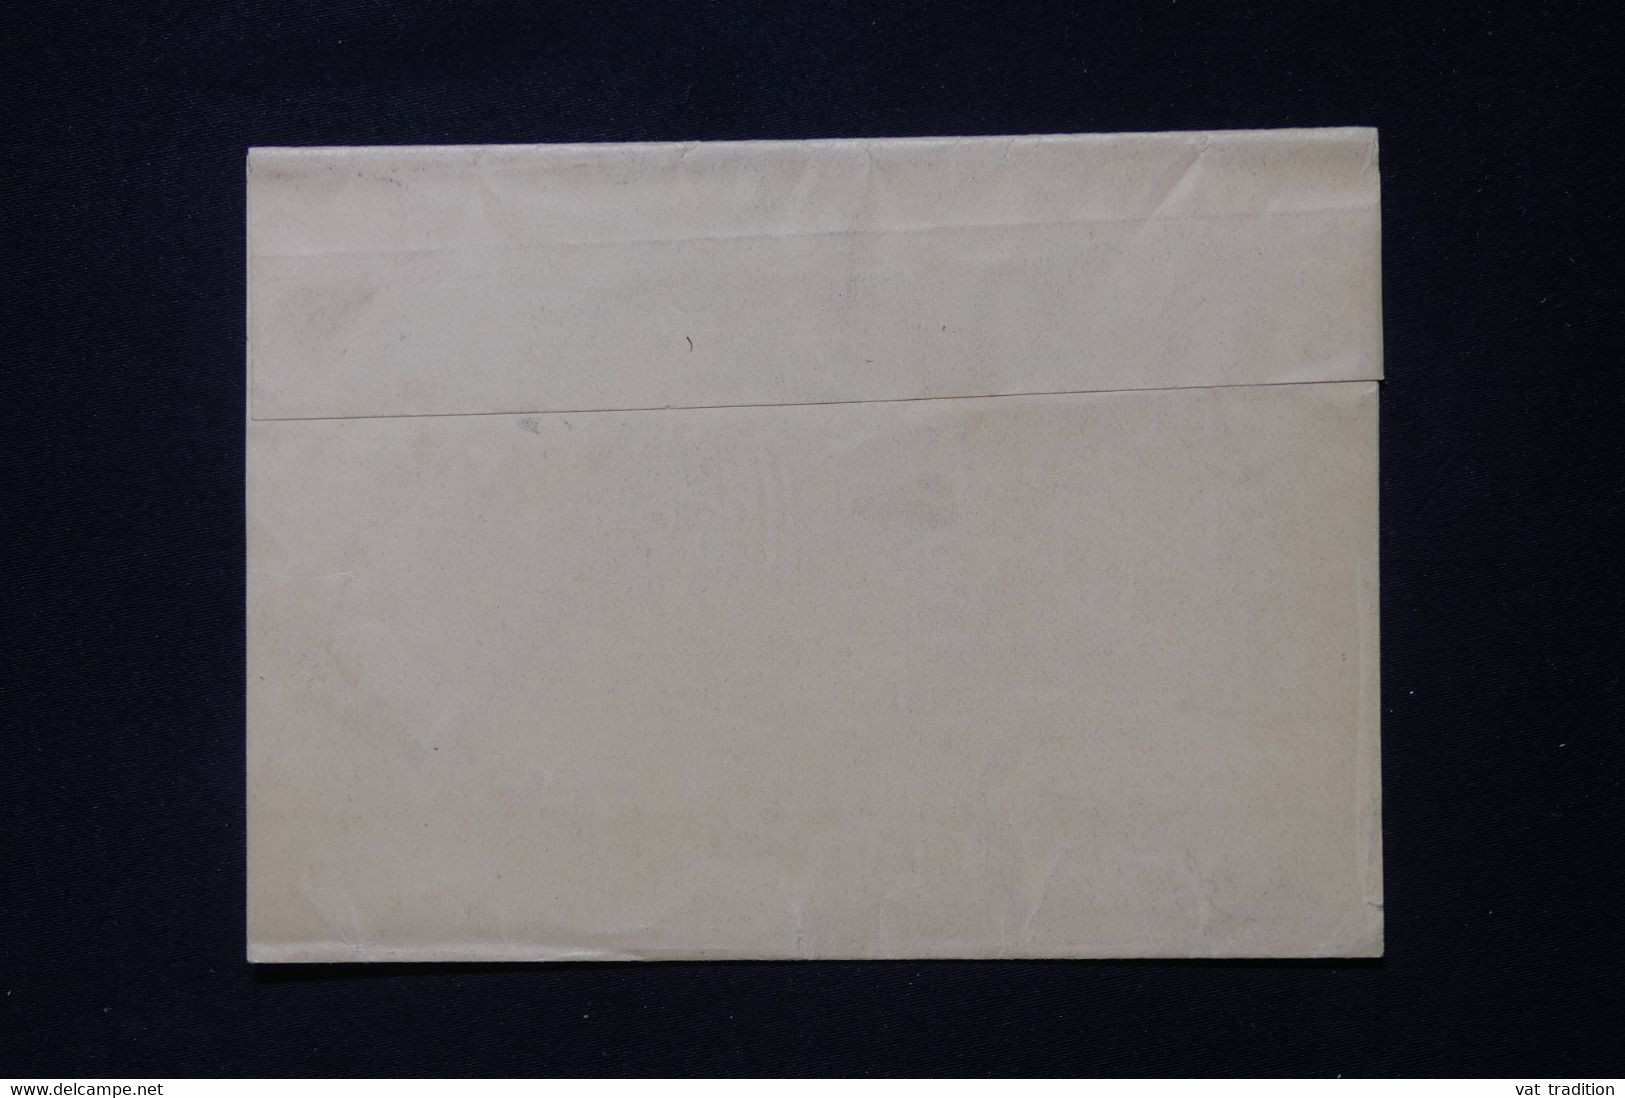 NOUVELLE ZÉLANDE - Entier Postal ( Pour Imprimés ) Pour La France  - L 88328 - Postal Stationery